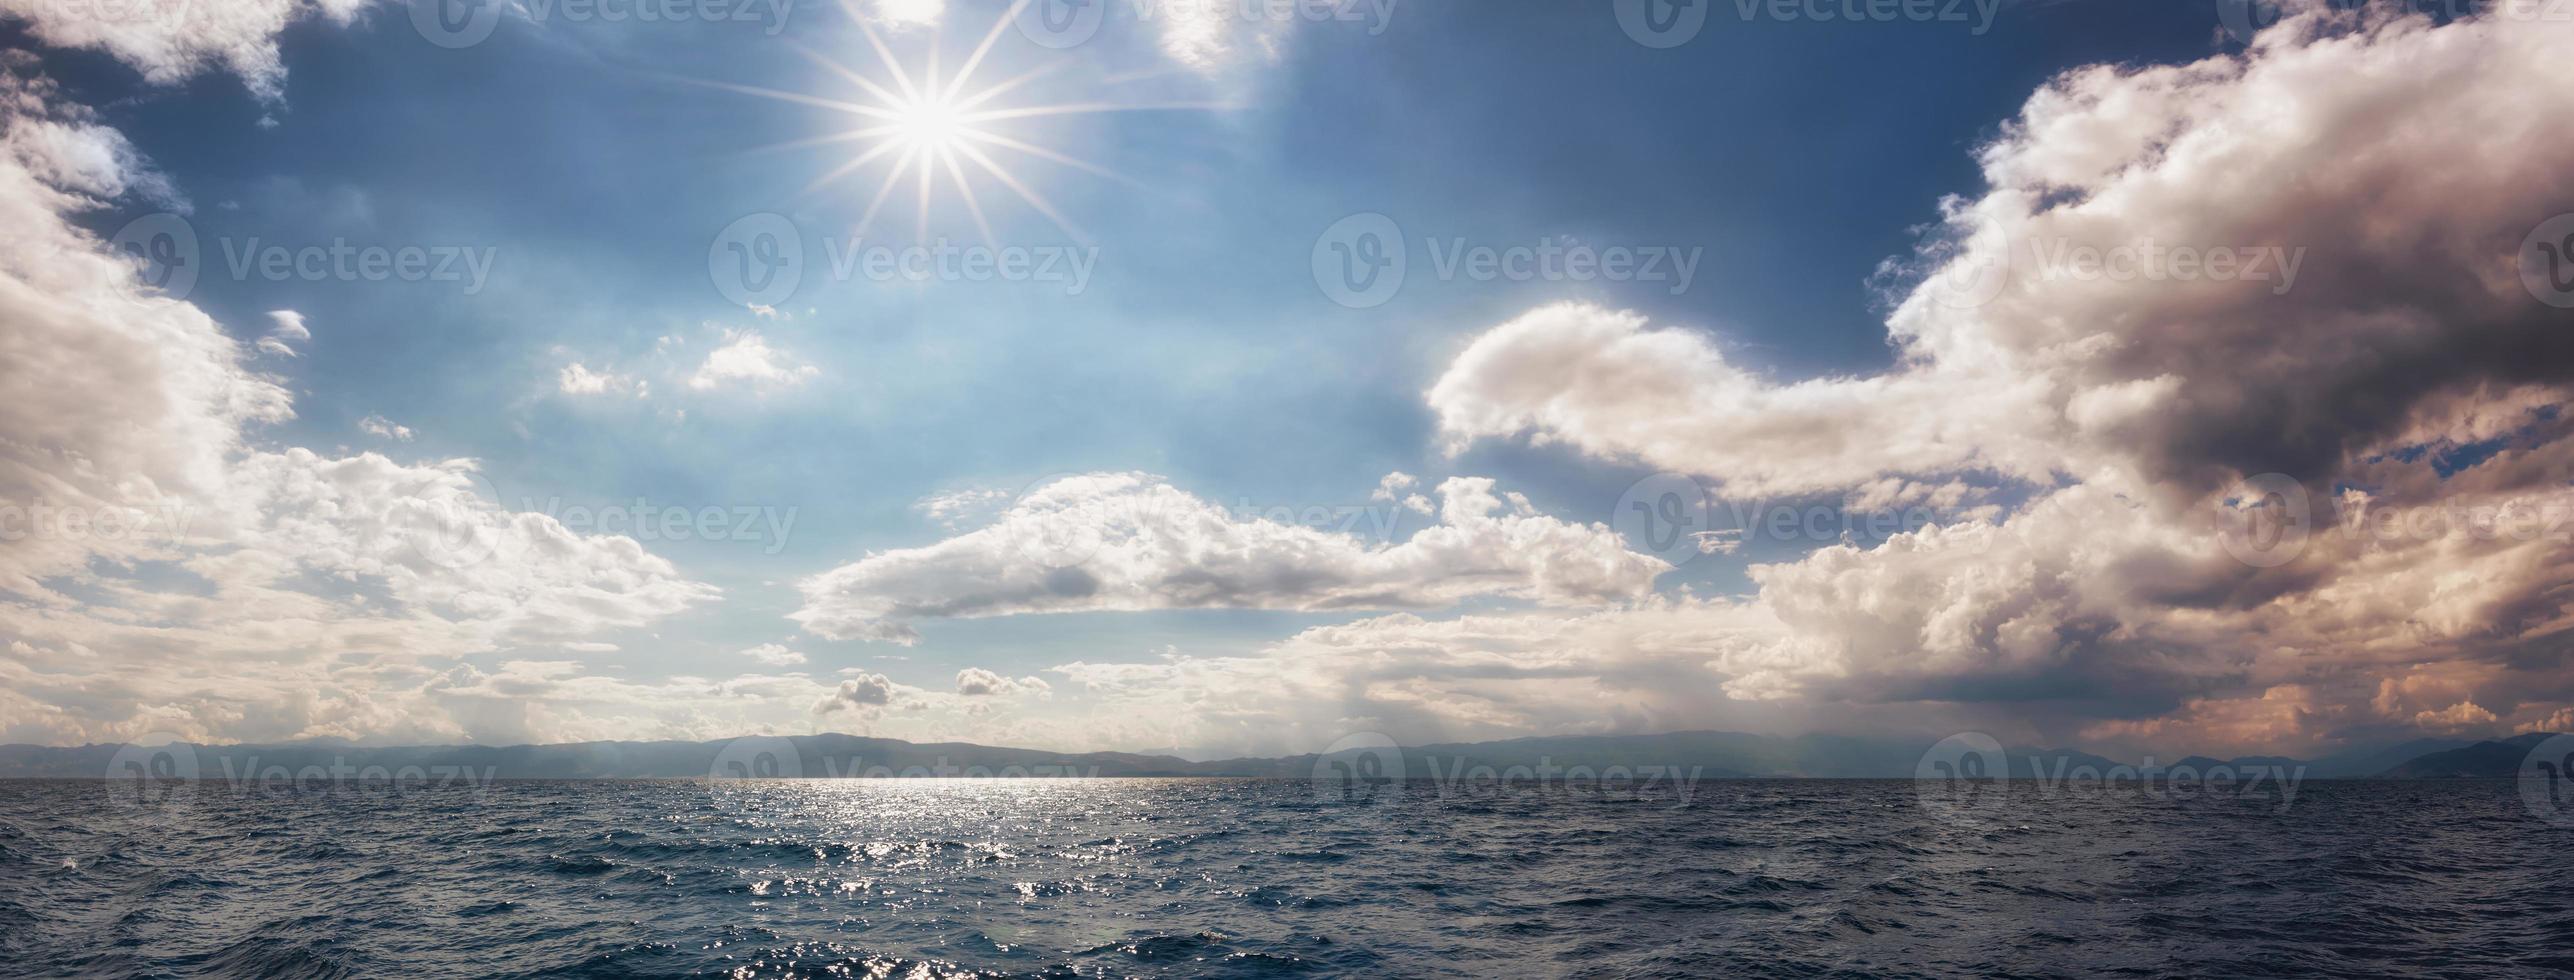 panoramautsikt över den vackra himlen över sjön Ohrid. färgglad himmel med mulet moln och glödande sol. molnig himmel. molnlandskap och skyscape atlake ohrid, södra Makedonien. foto